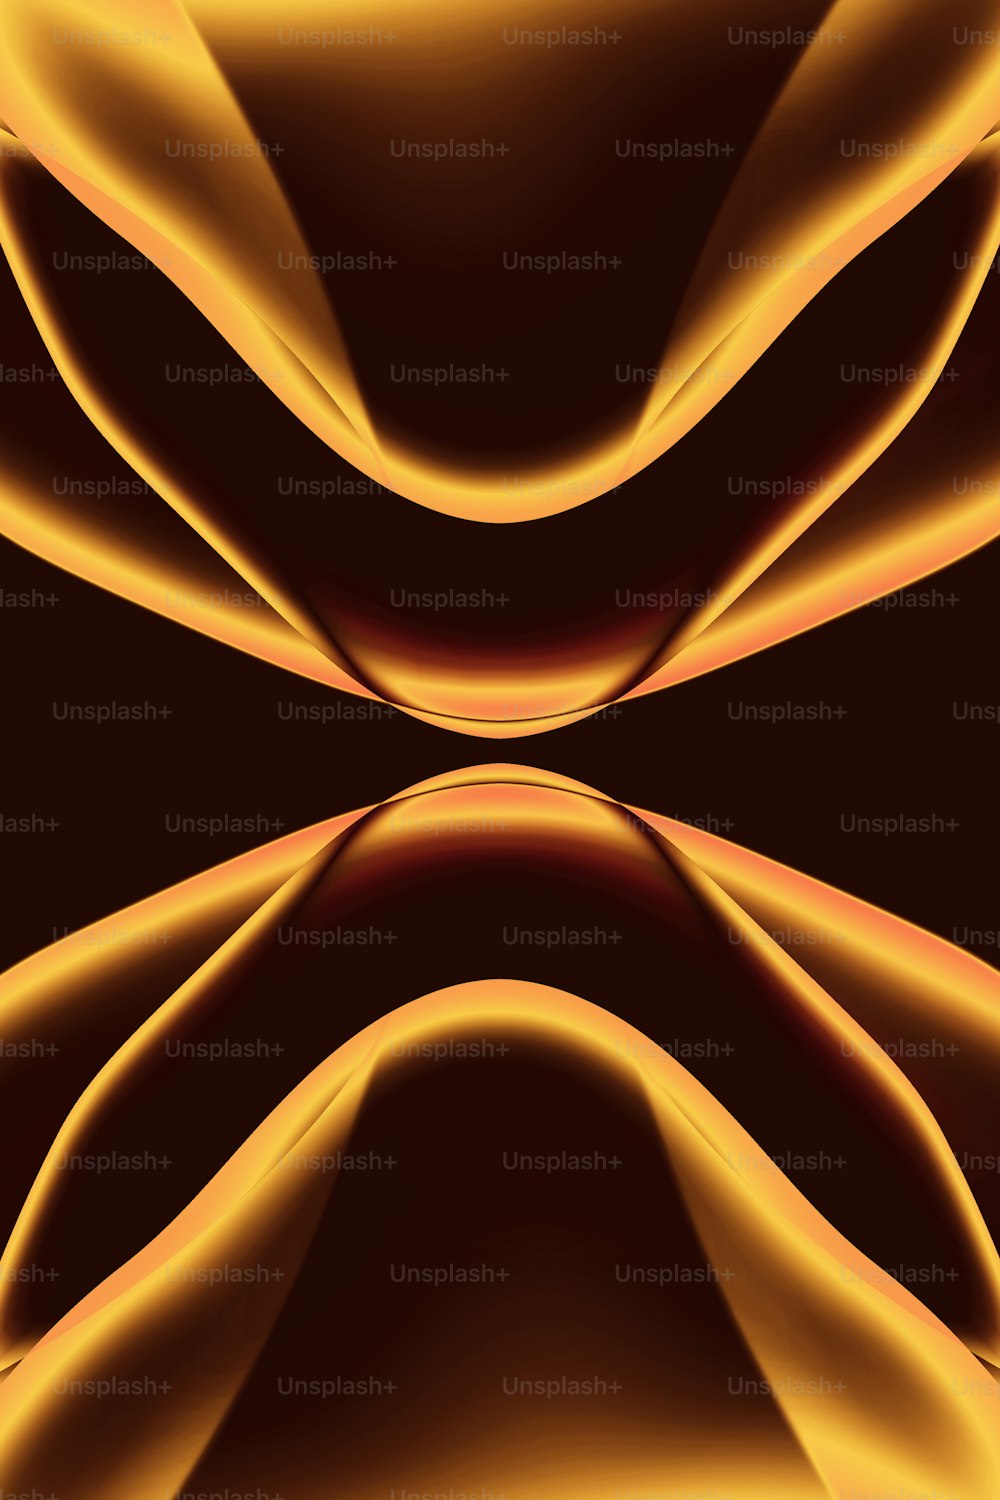 Una imagen generada por computadora de un fondo marrón y amarillo